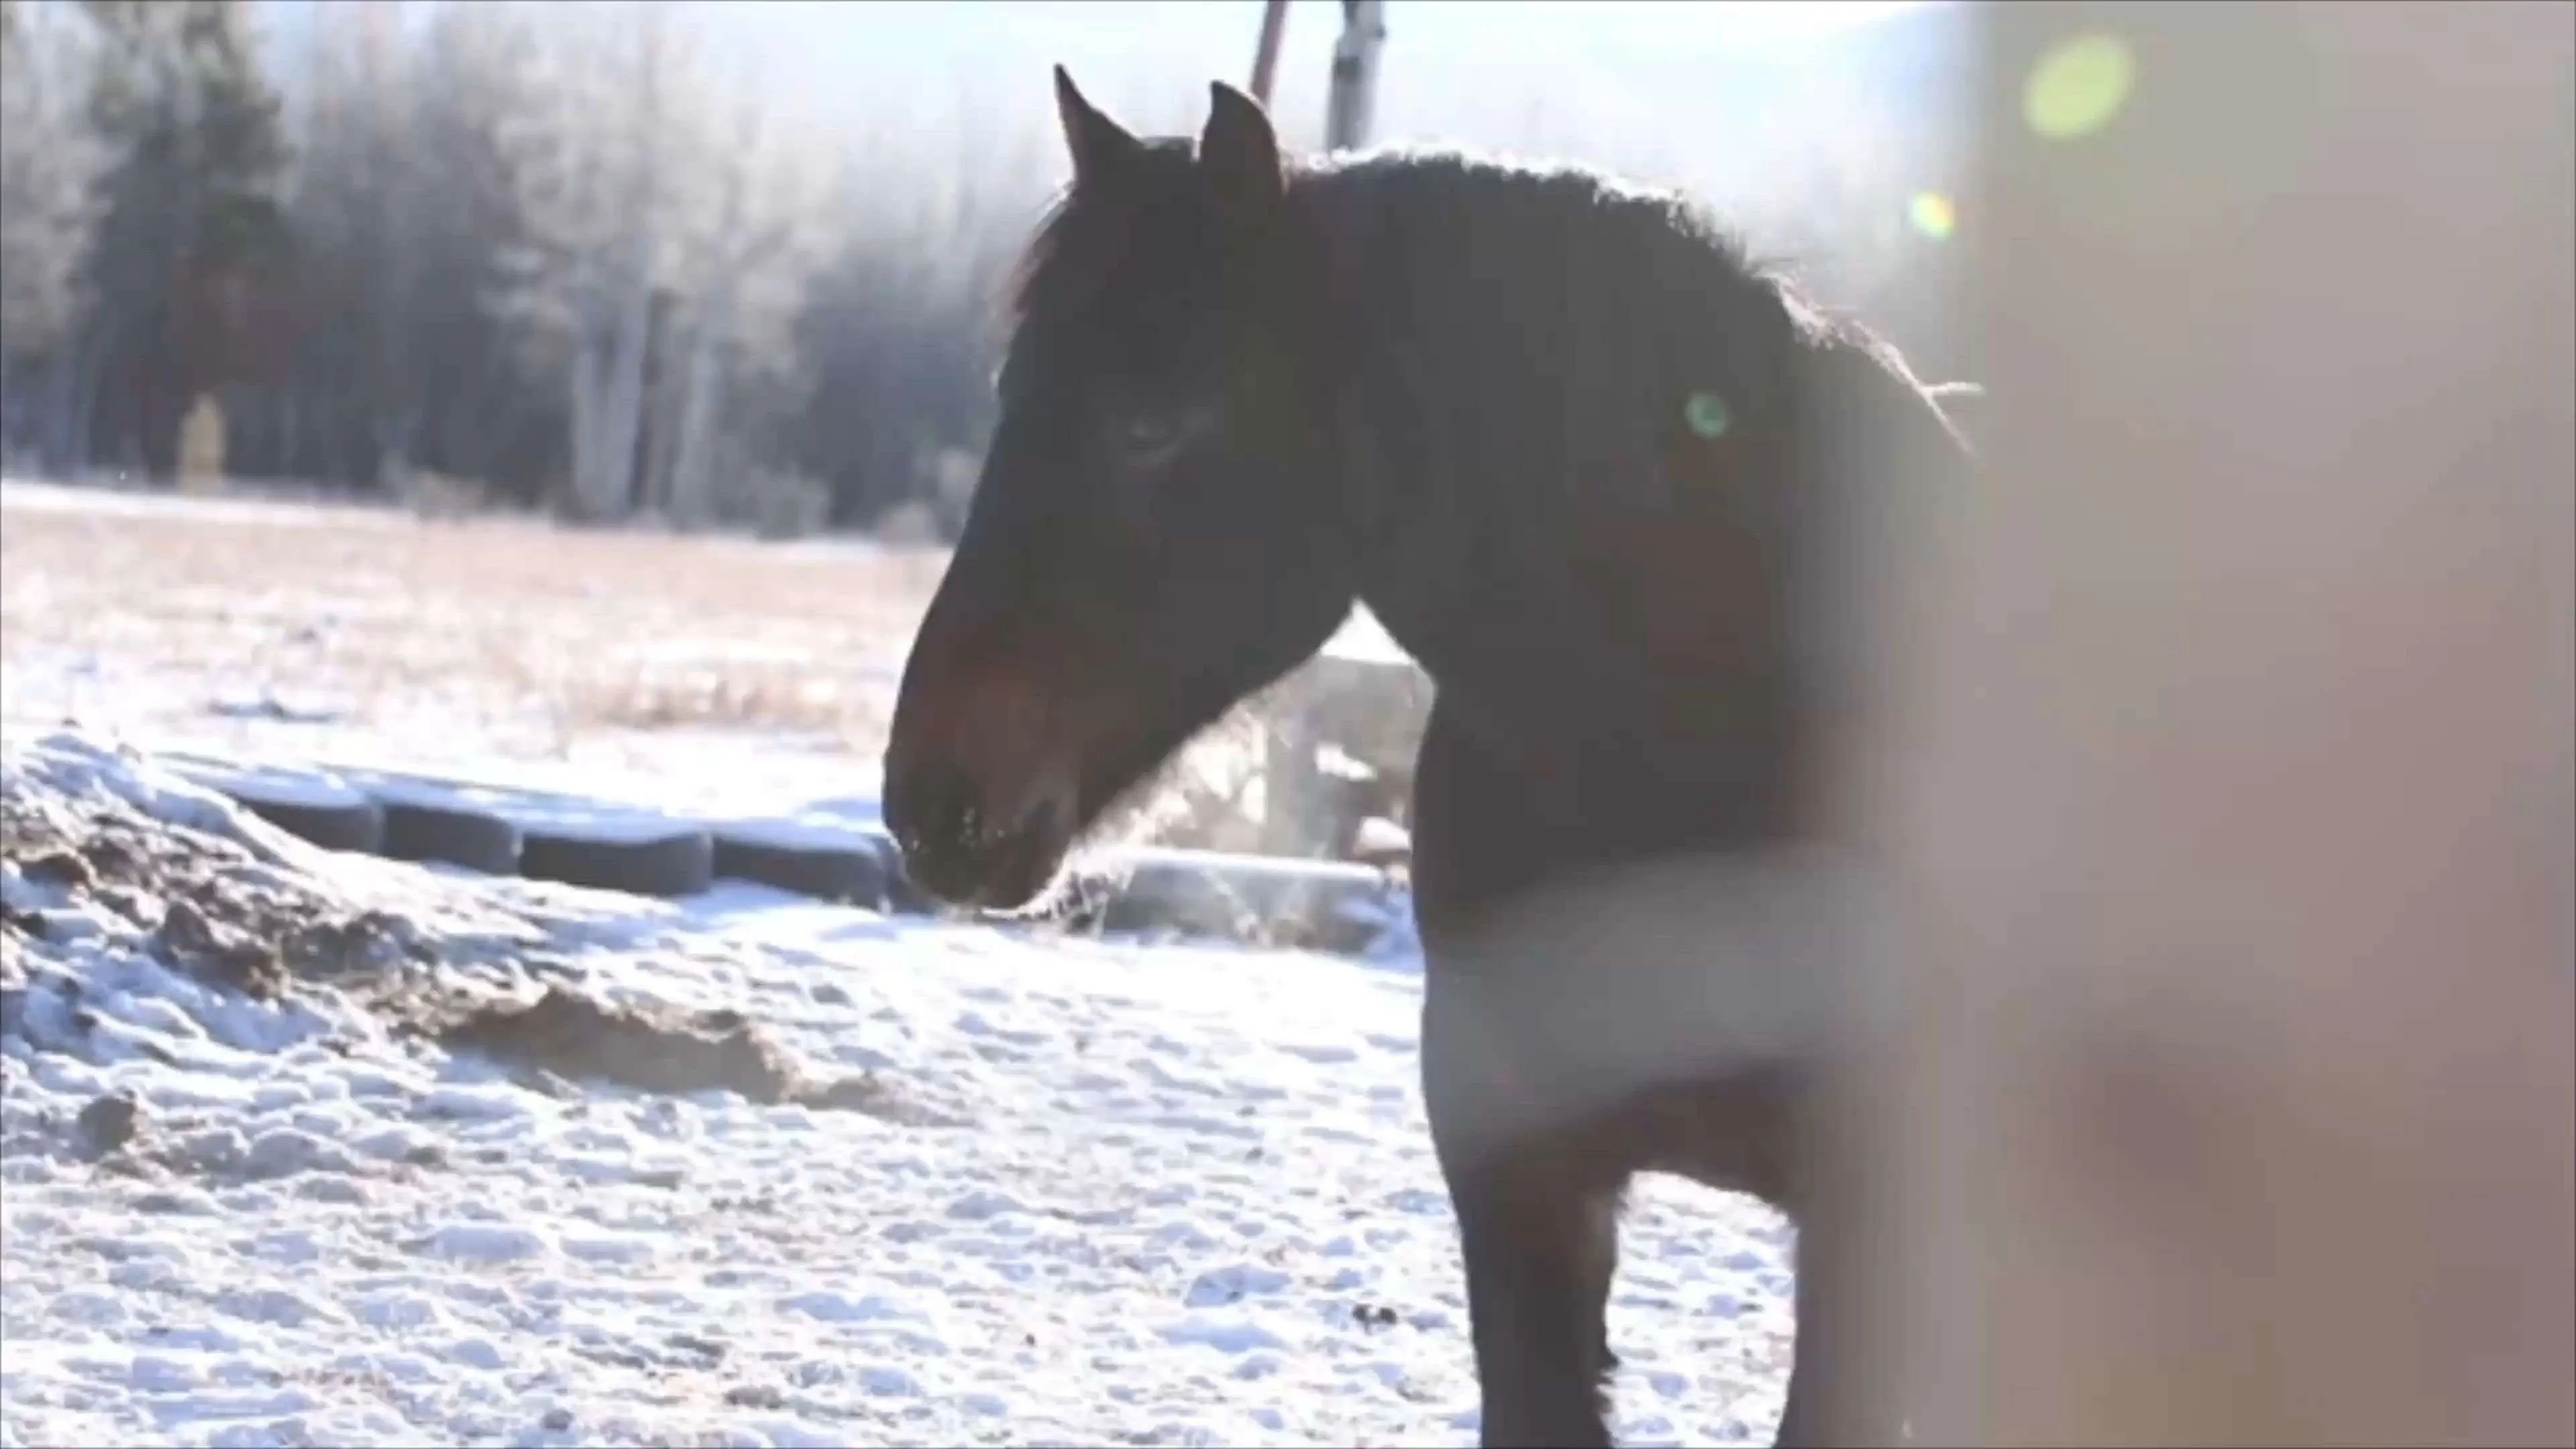 Appell an Pferdehalter: Lasst den Tieren aus Liebe die Kälte